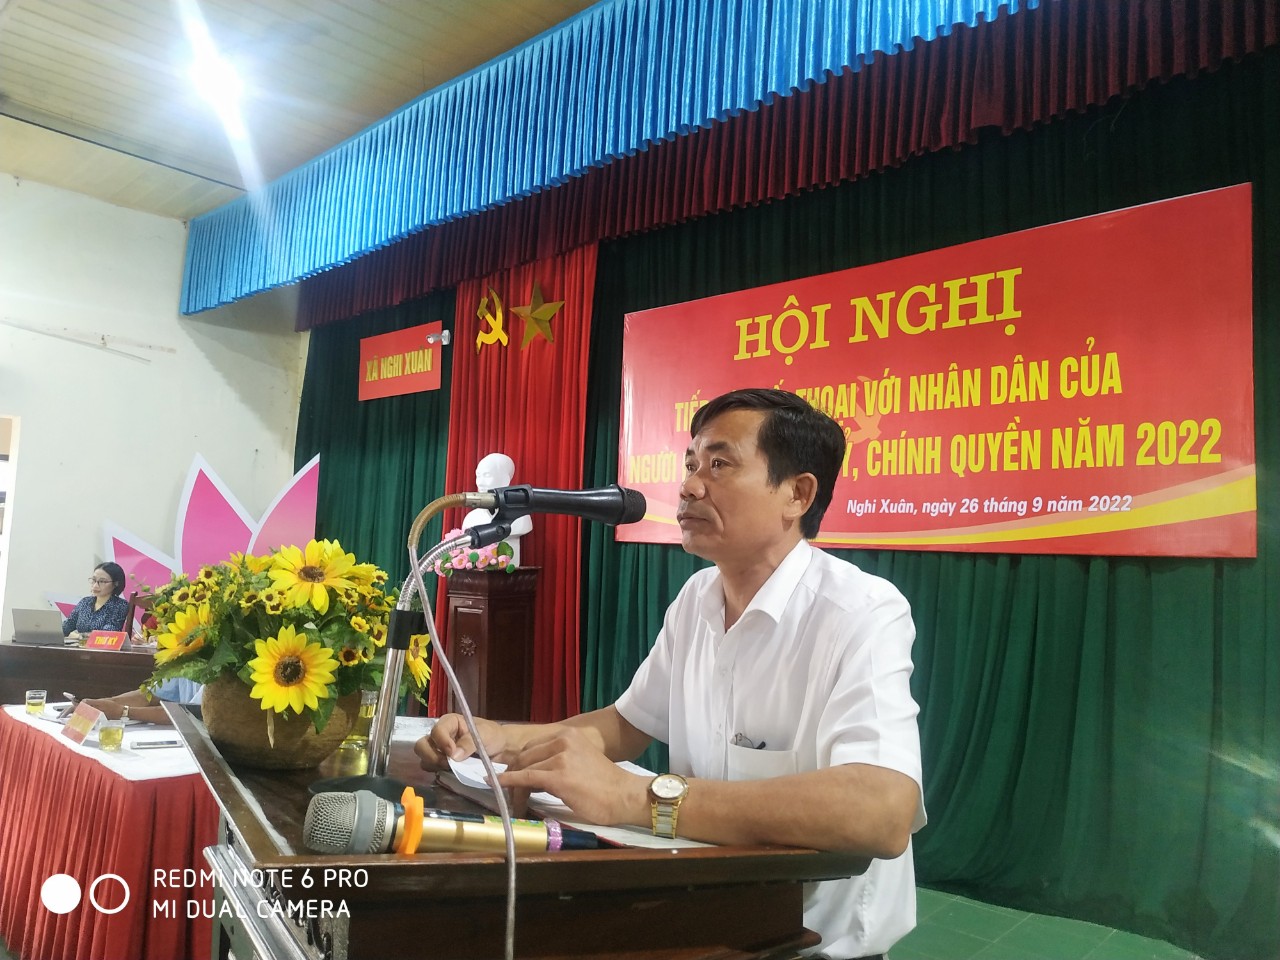 Đồng chí Nguyễn Văn Trường - Bí thư đảng bộ khai mạc hội nghị